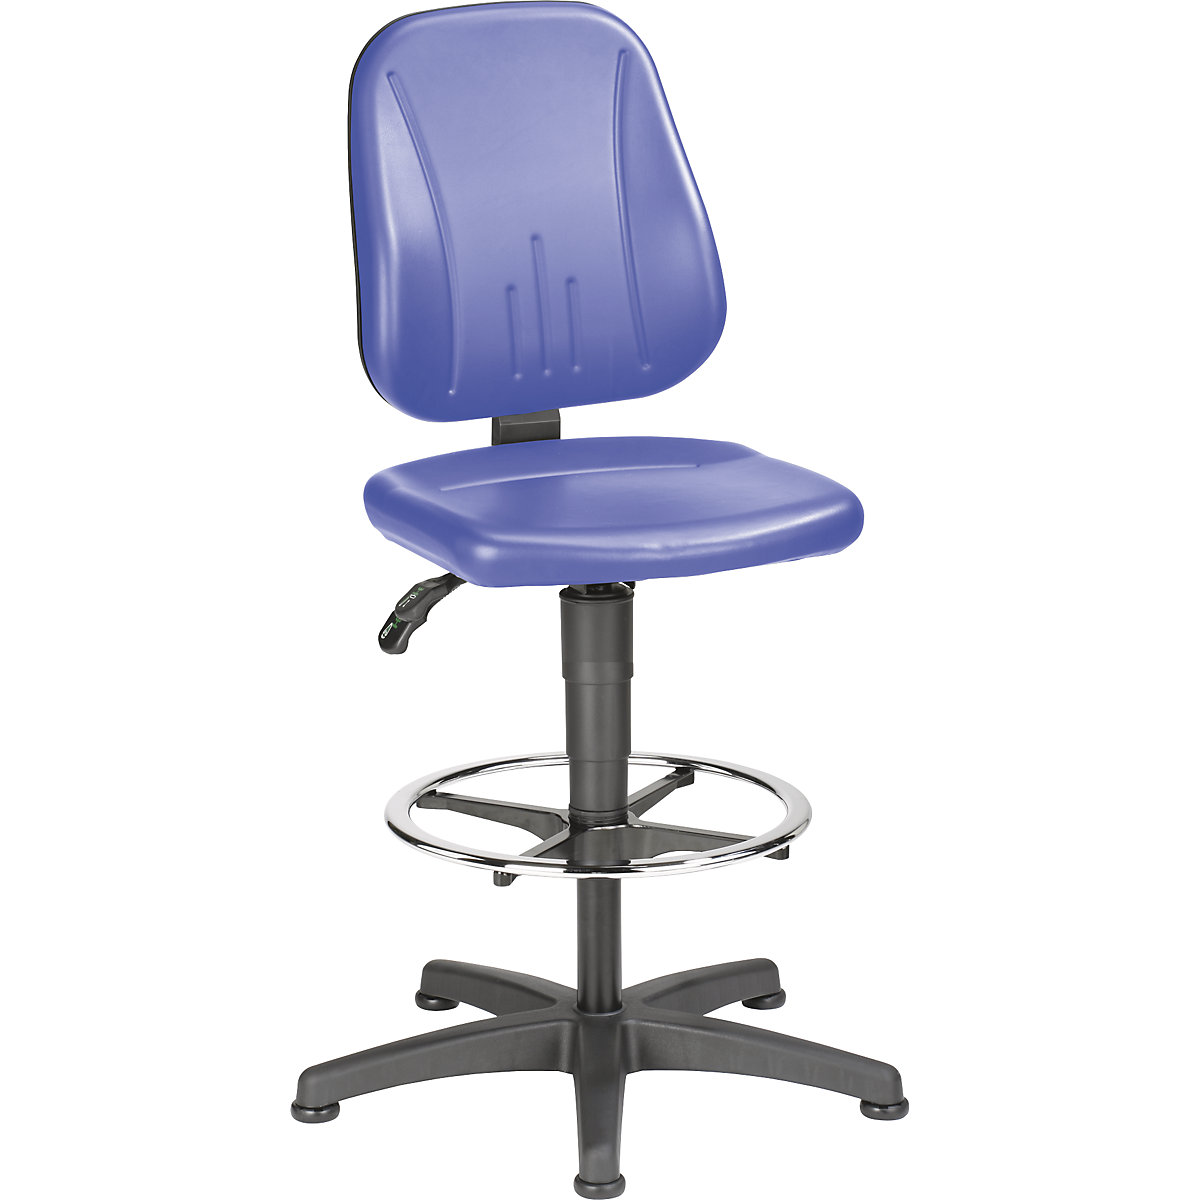 Okretni radni stolac – bimos, s namještanjem visine pomoću plinske opruge, presvlaka od umjetne kože, u plavoj boji, s podnim vodilicama i nožnim obručem-5